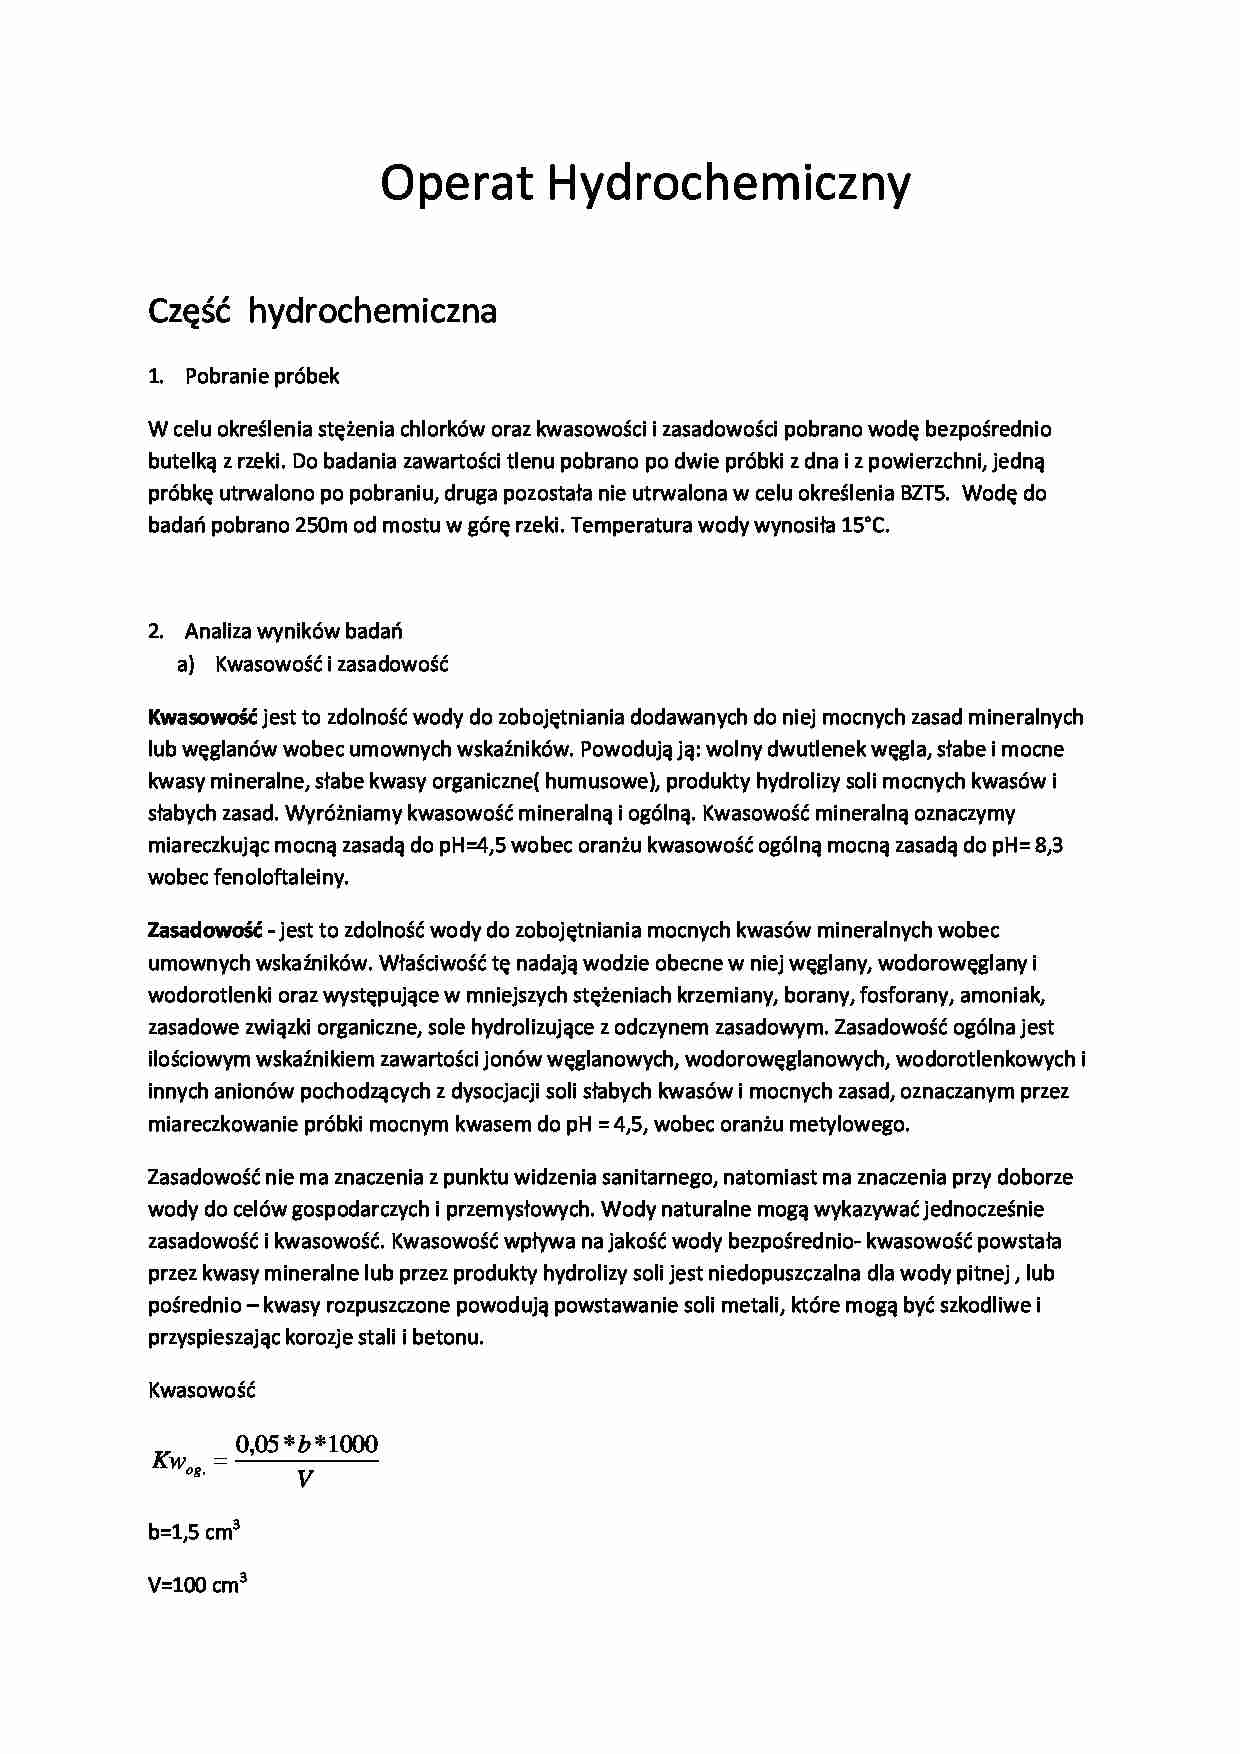 Operat hydrochemiczny - omówienie - strona 1